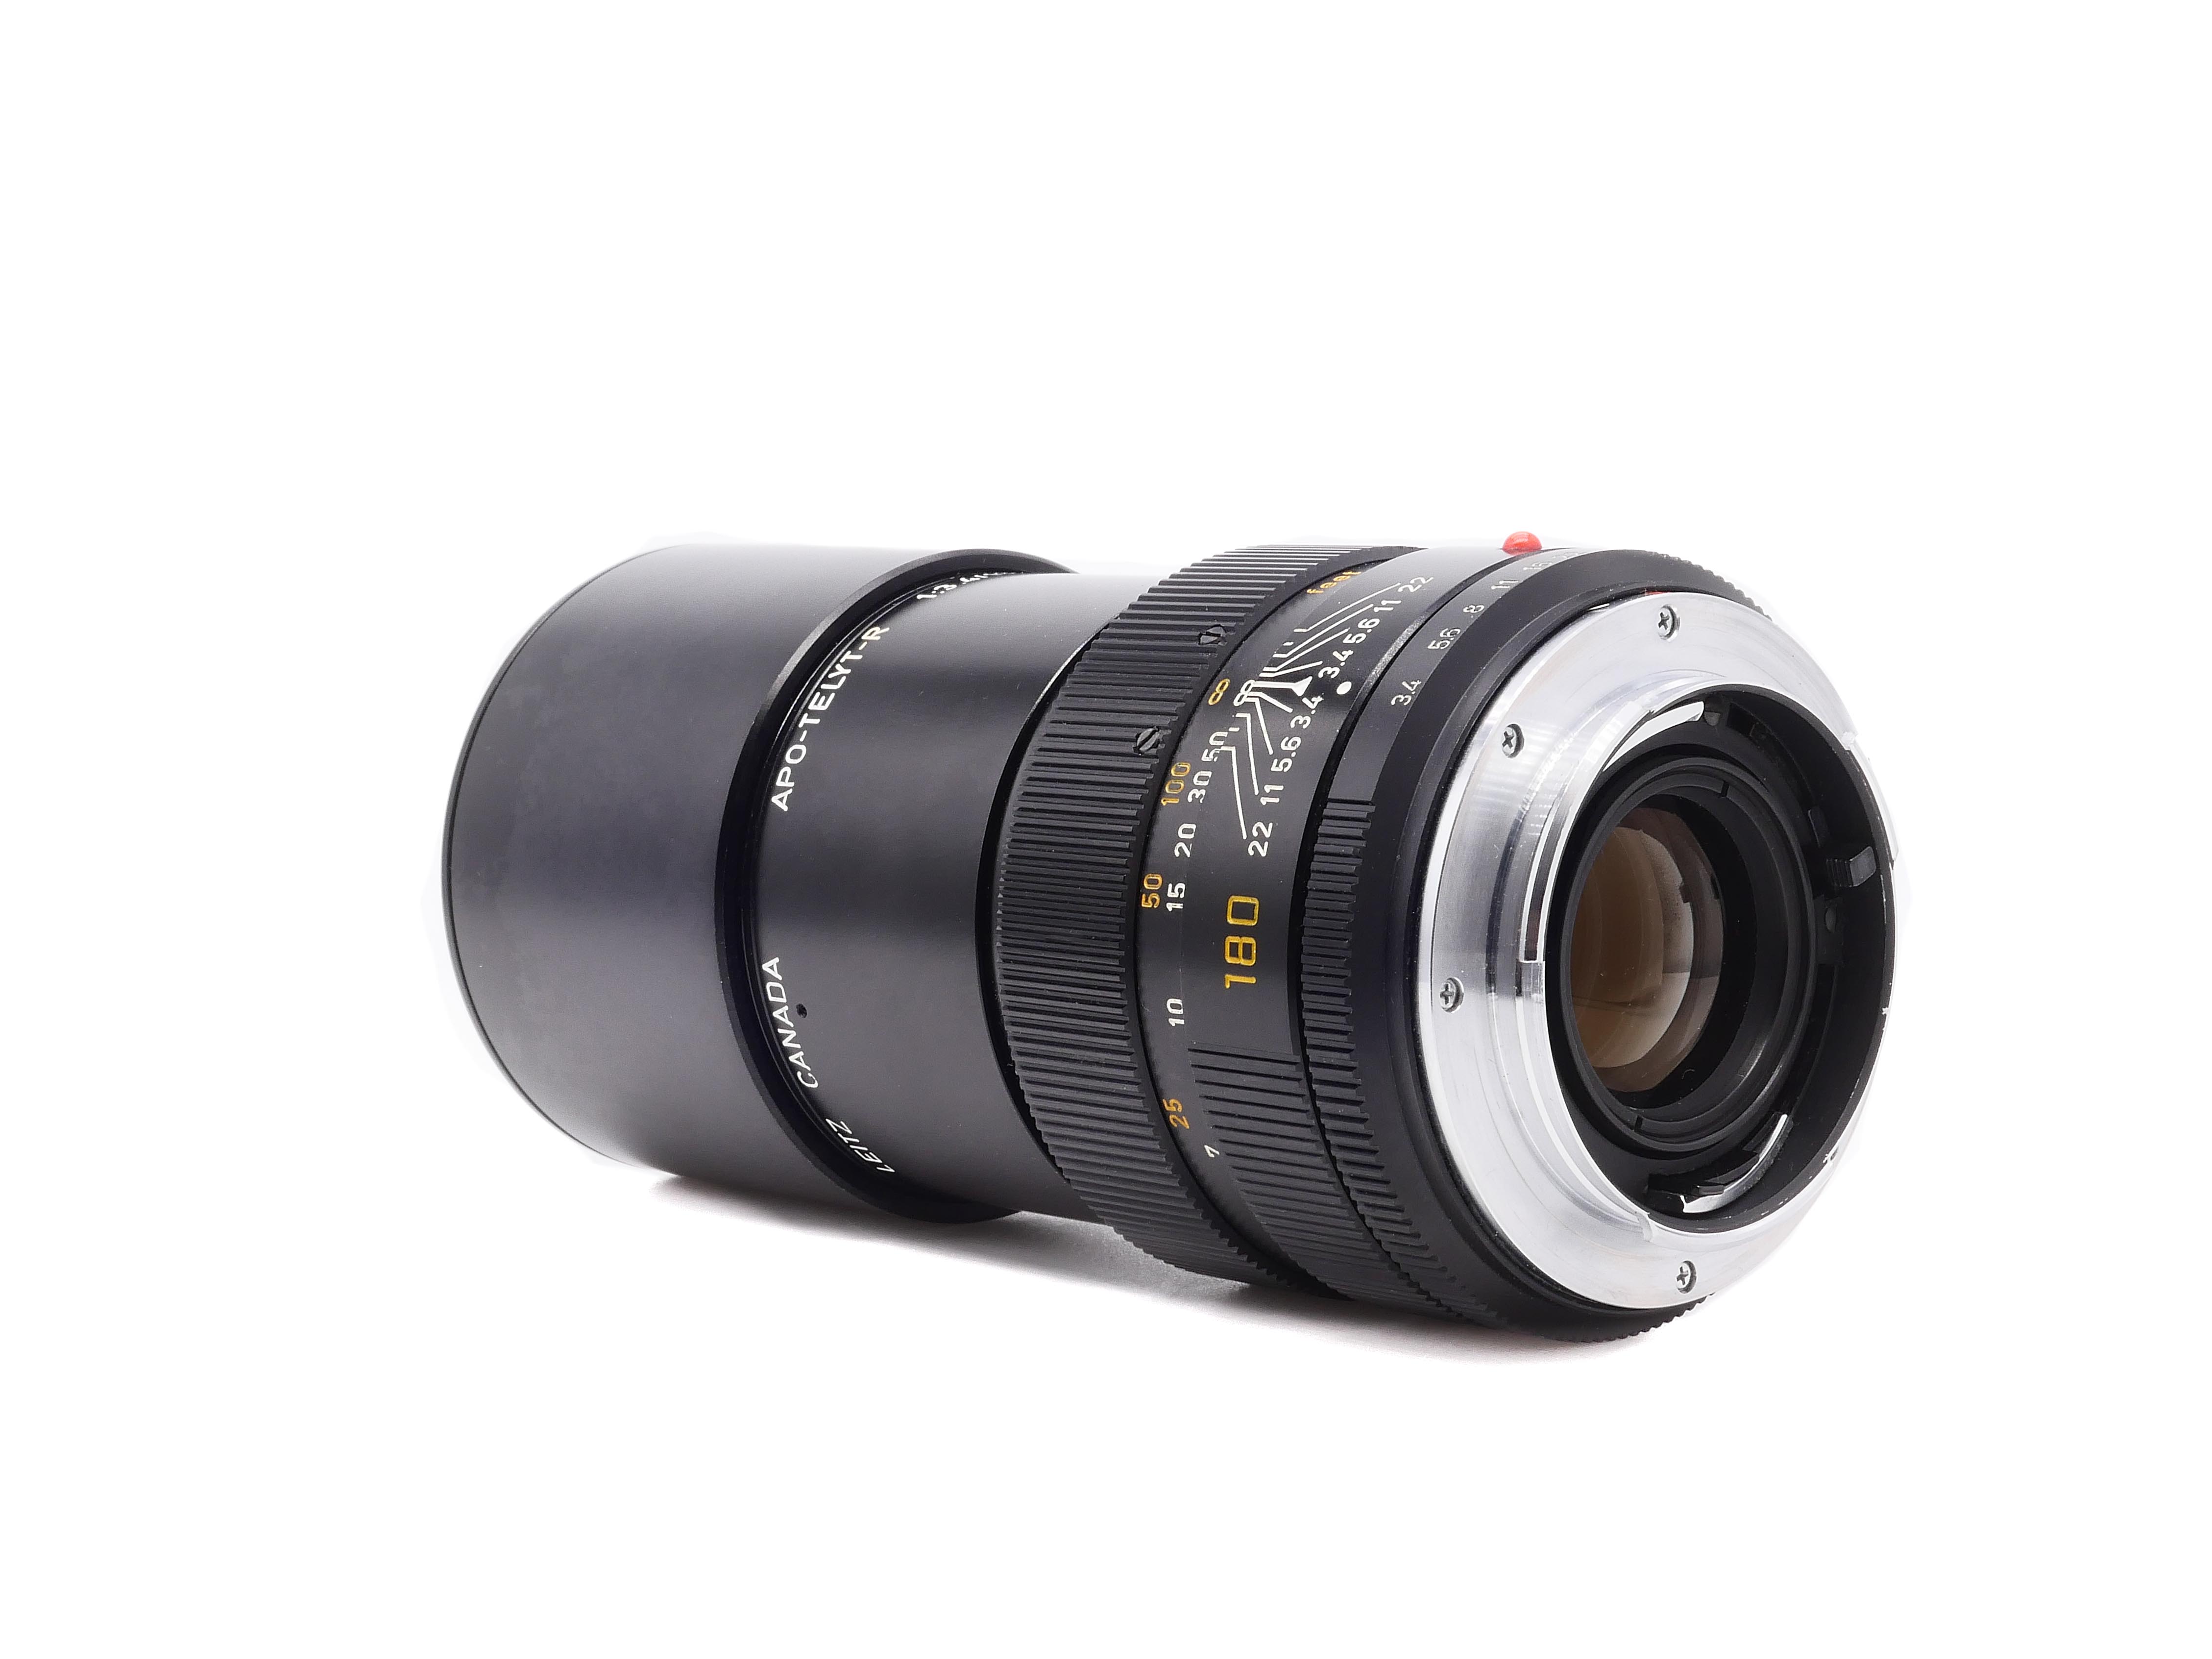 Leica APO-Telyt-R 3,4/180mm